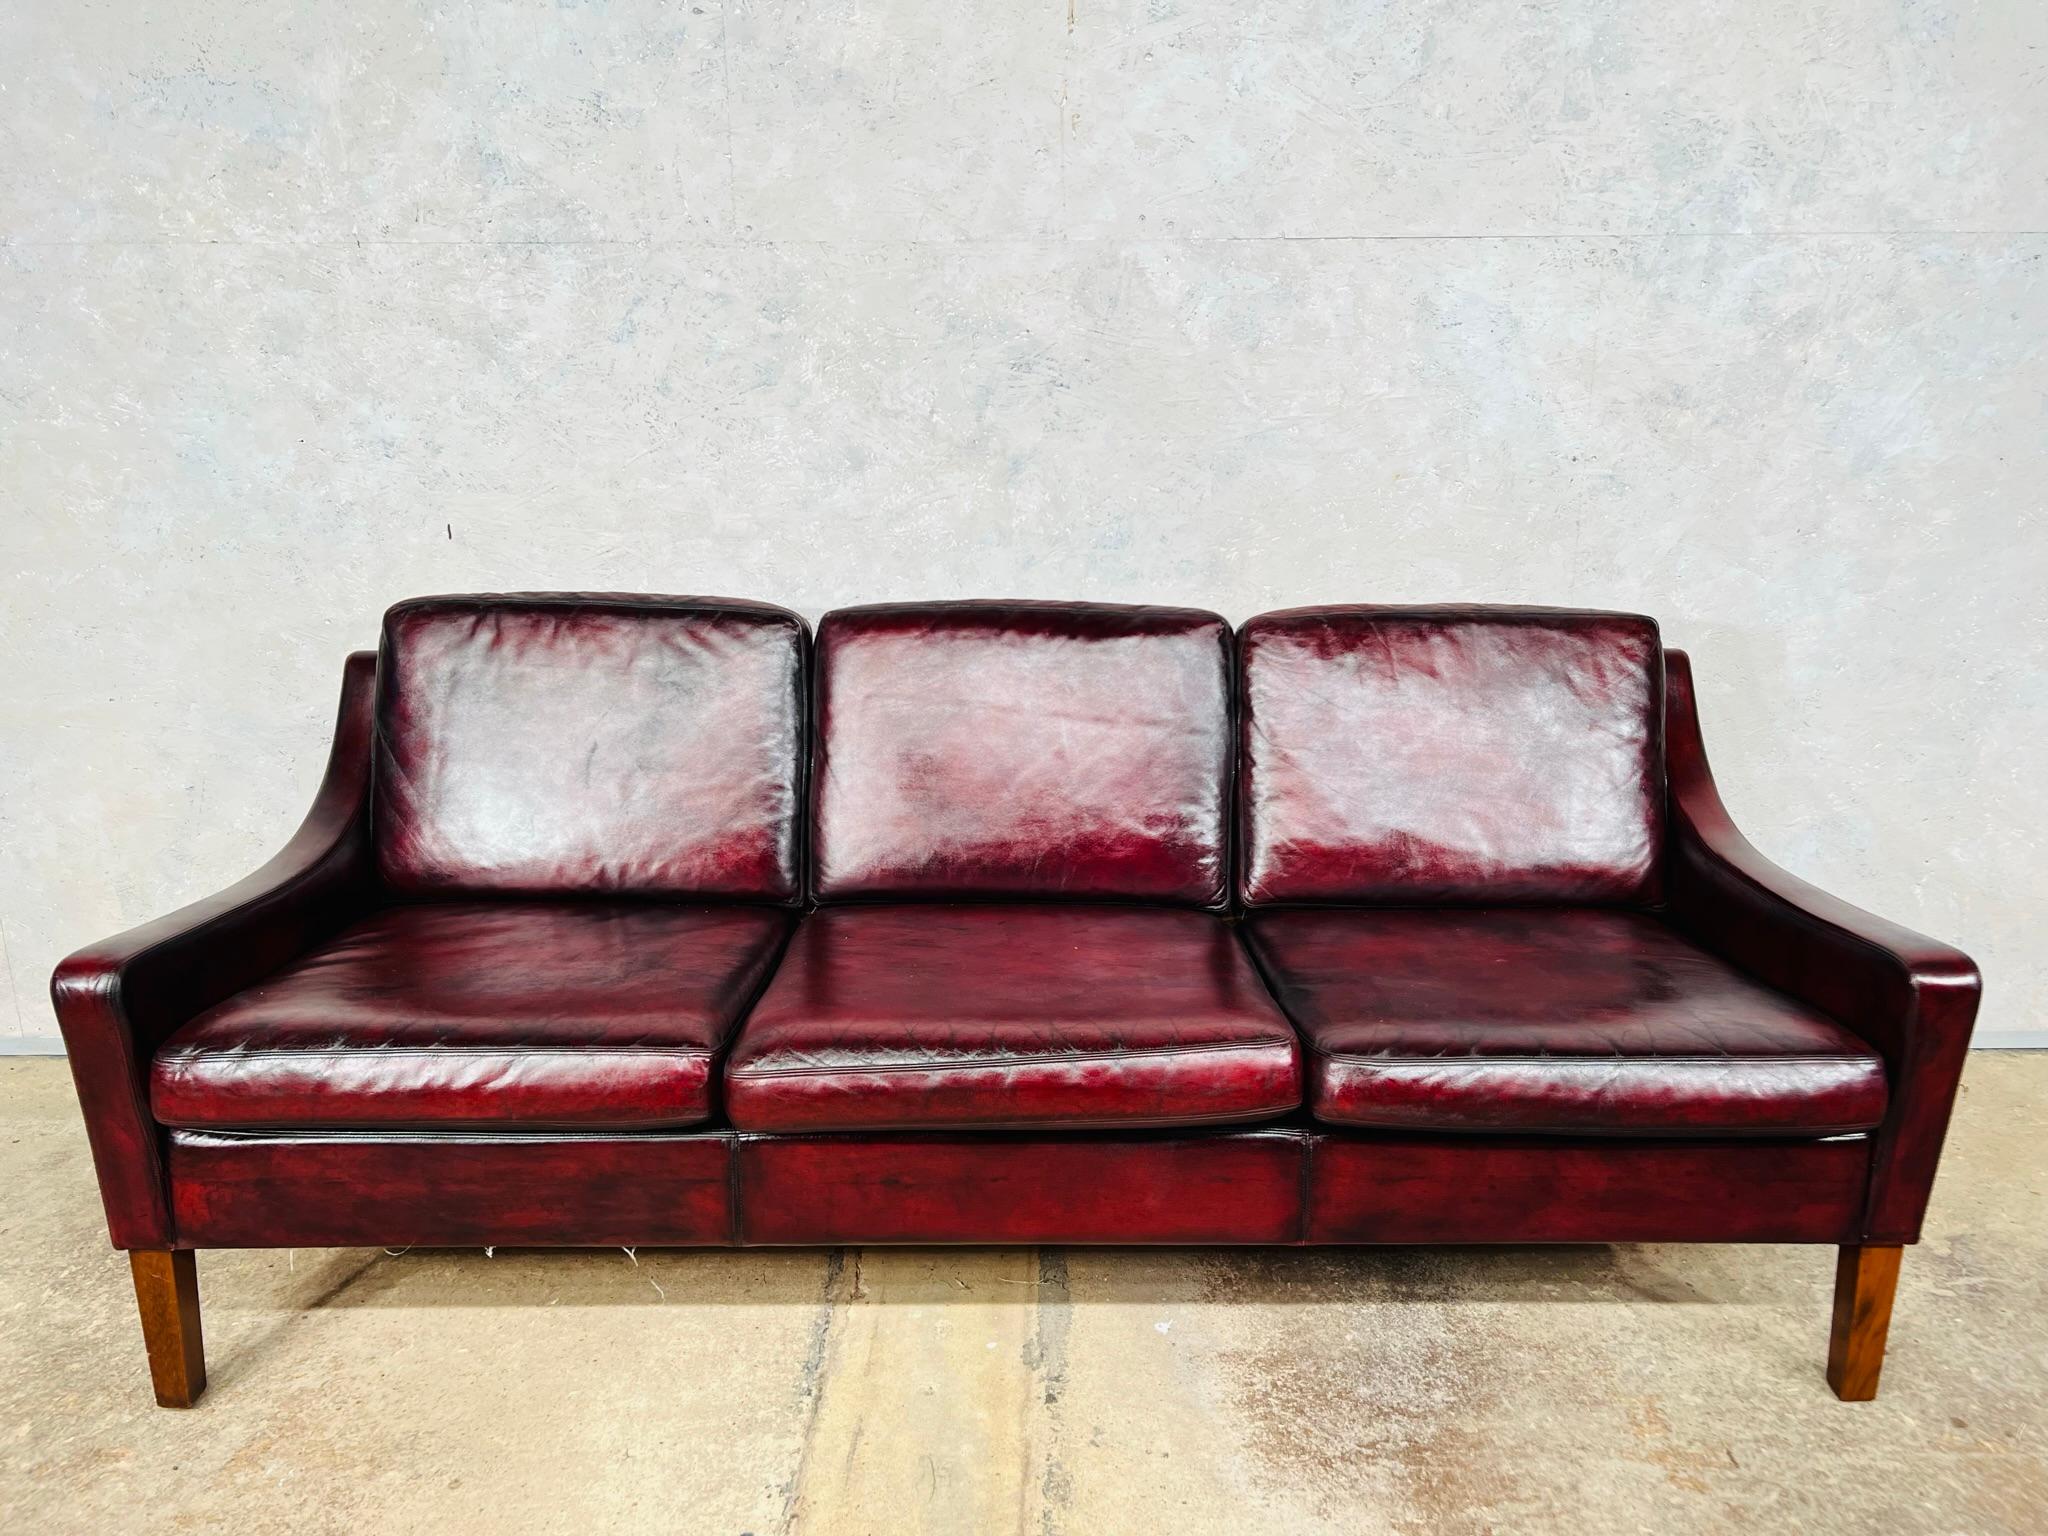 Canapé trois places en cuir vintage danois des années 70.

Un trois places compact, au design et à la forme remarquables, avec une fantastique couleur rouge profond patinée à la main, le cuir a une belle patine et une belle finition.

Les visites